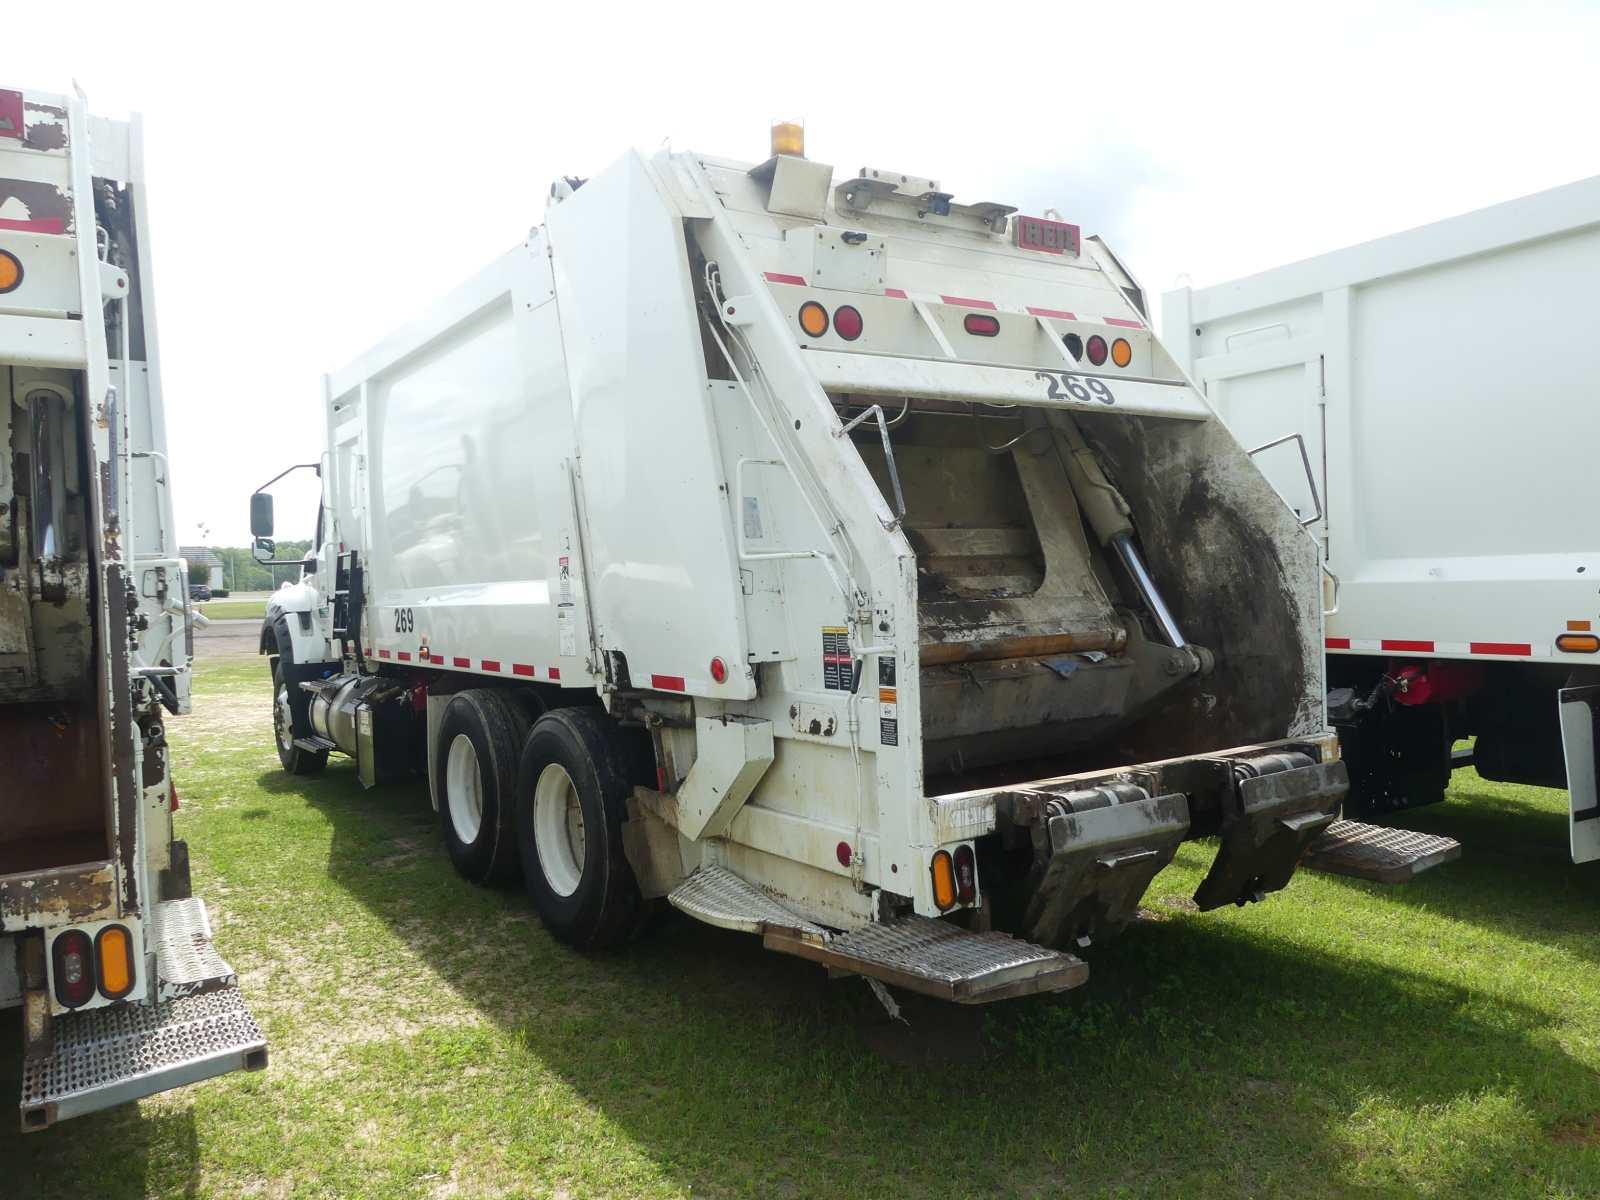 2021 International HV613 Garbage Truck, s/n 3HAESTZT9ML828048 (Extra Key in